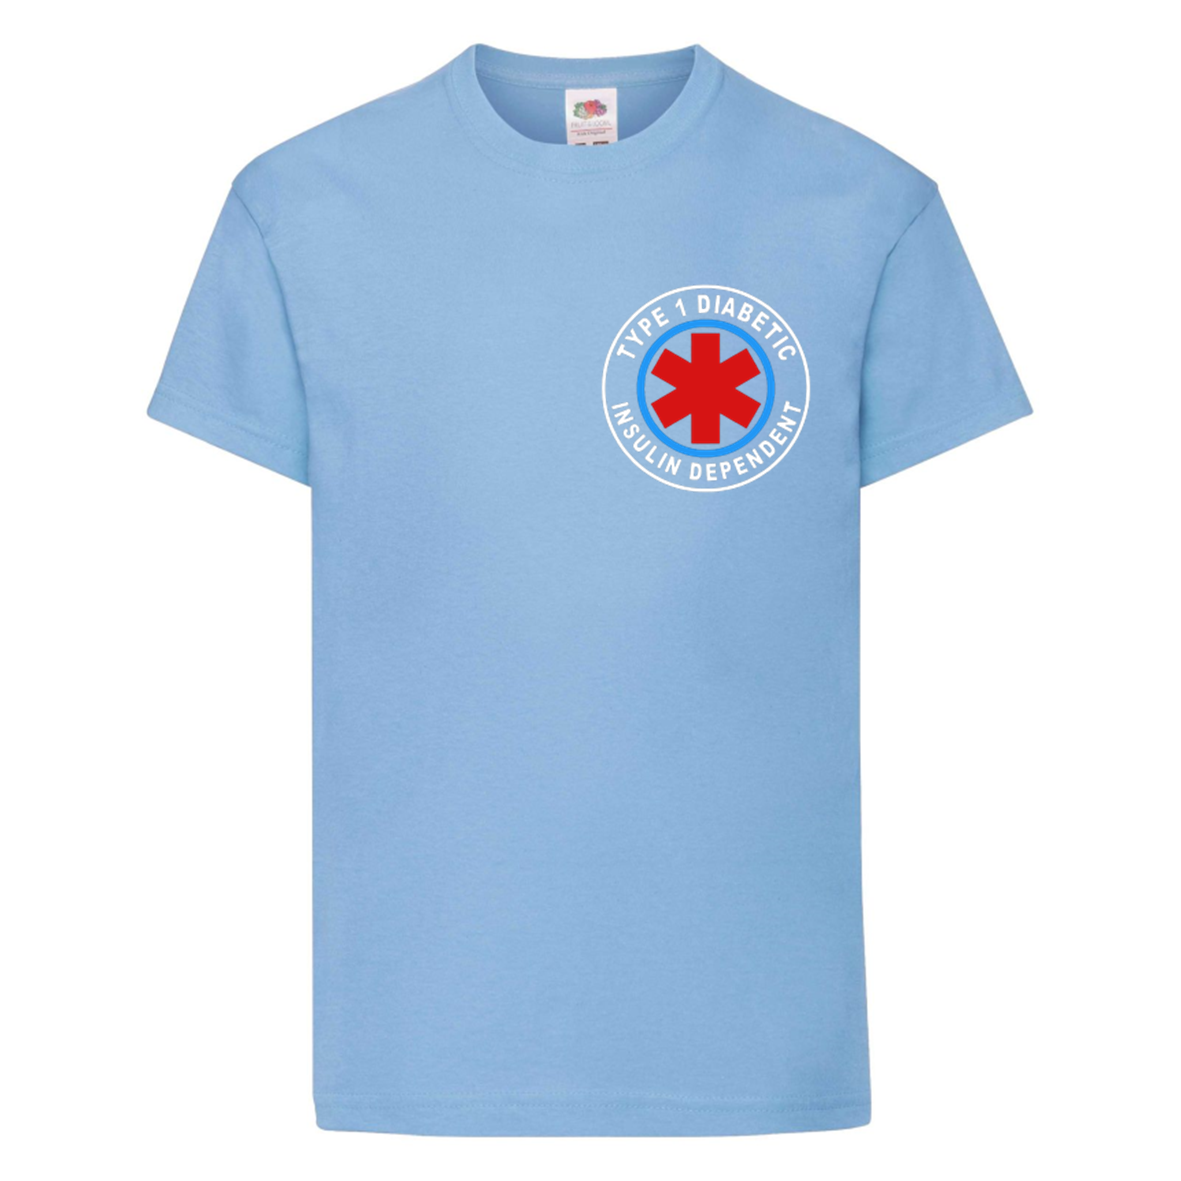 Insulin Dependent Kids T Shirt